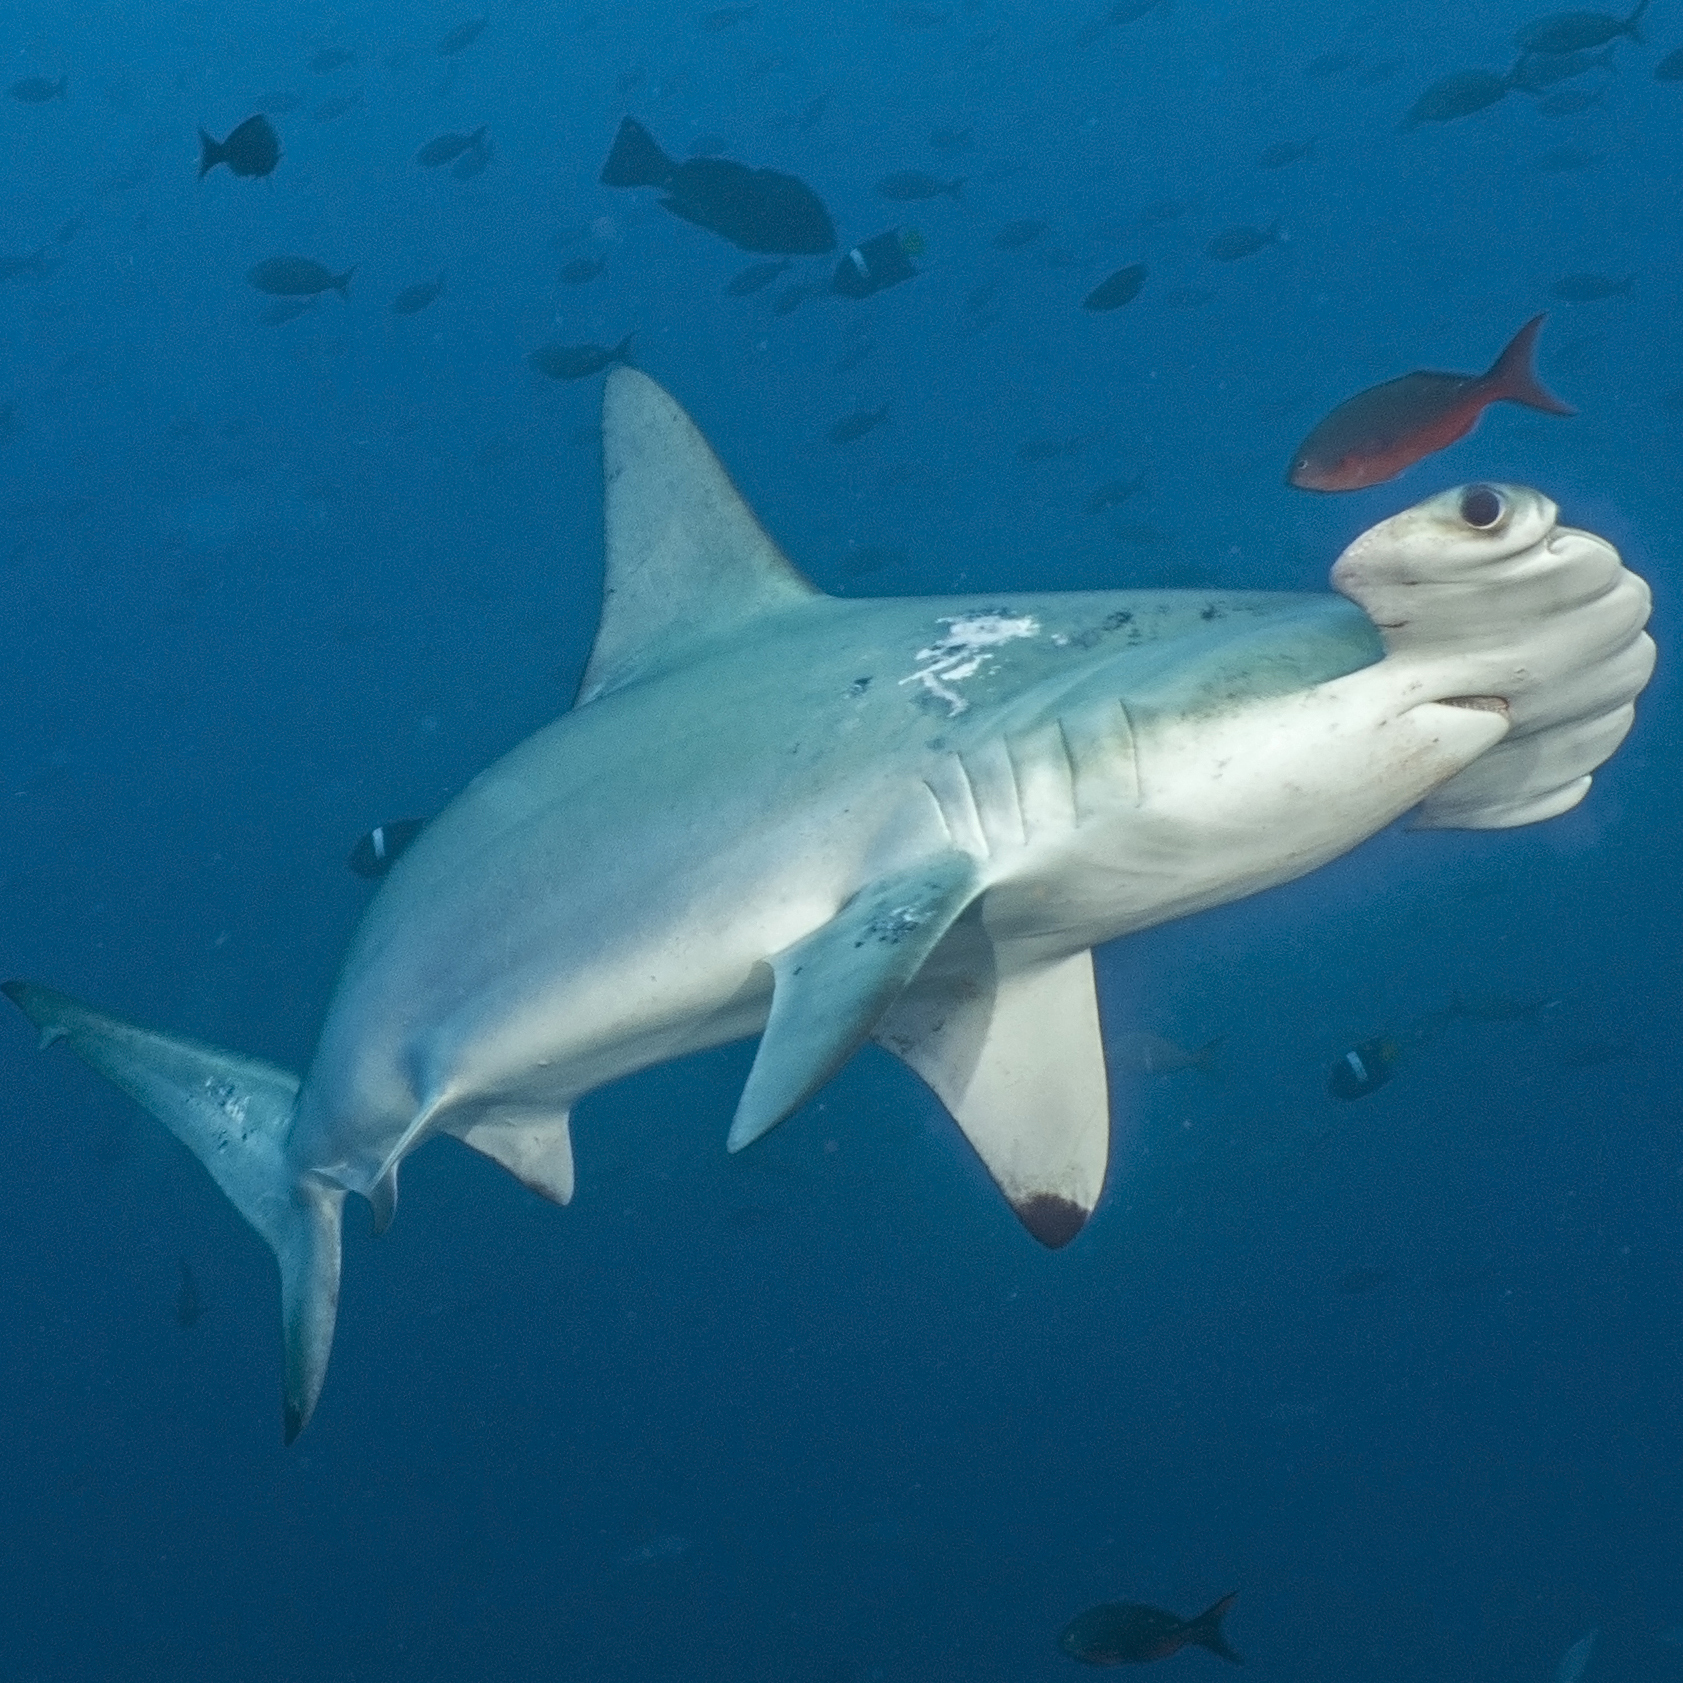 海洋是地球上最大的生态系统。在水下可以找到许多让人叹为观止的生物，包括“大锤头”无沟双髻鲨。2017年世界野生动植物日摄影比赛“透过年轻人的眼睛”入围作品。国际野生生物保护学会图片/Artal Shoshani